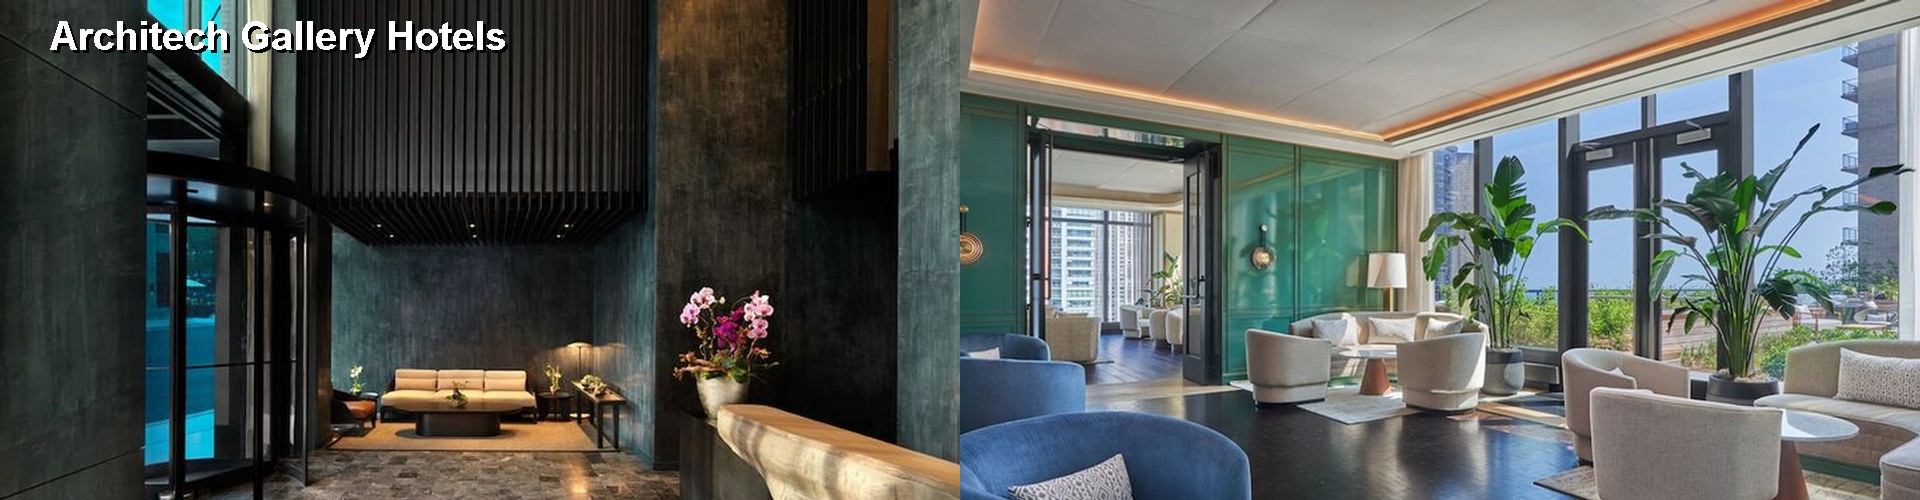 3 Best Hotels near Architech Gallery